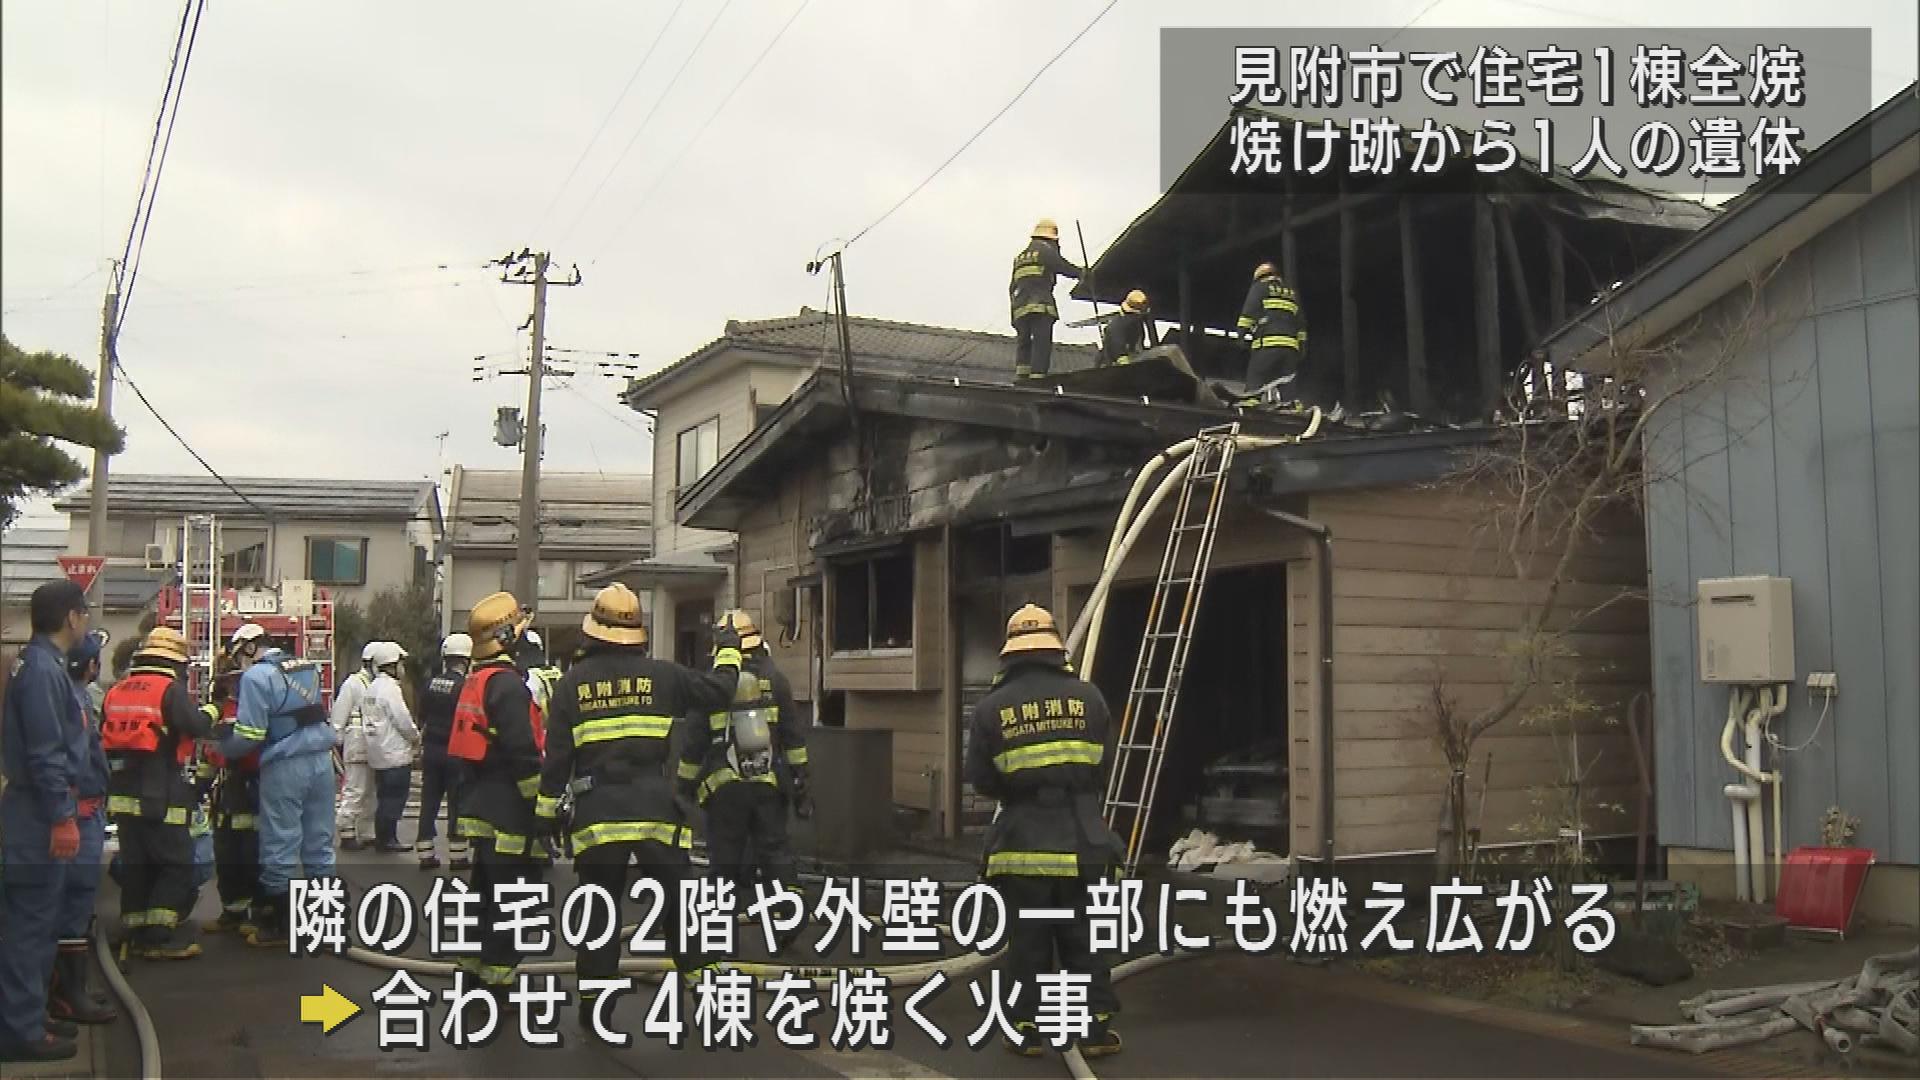 住宅4棟を焼く火事   焼け跡から1人の遺体 一人暮らしの男性か【新潟・見附市】